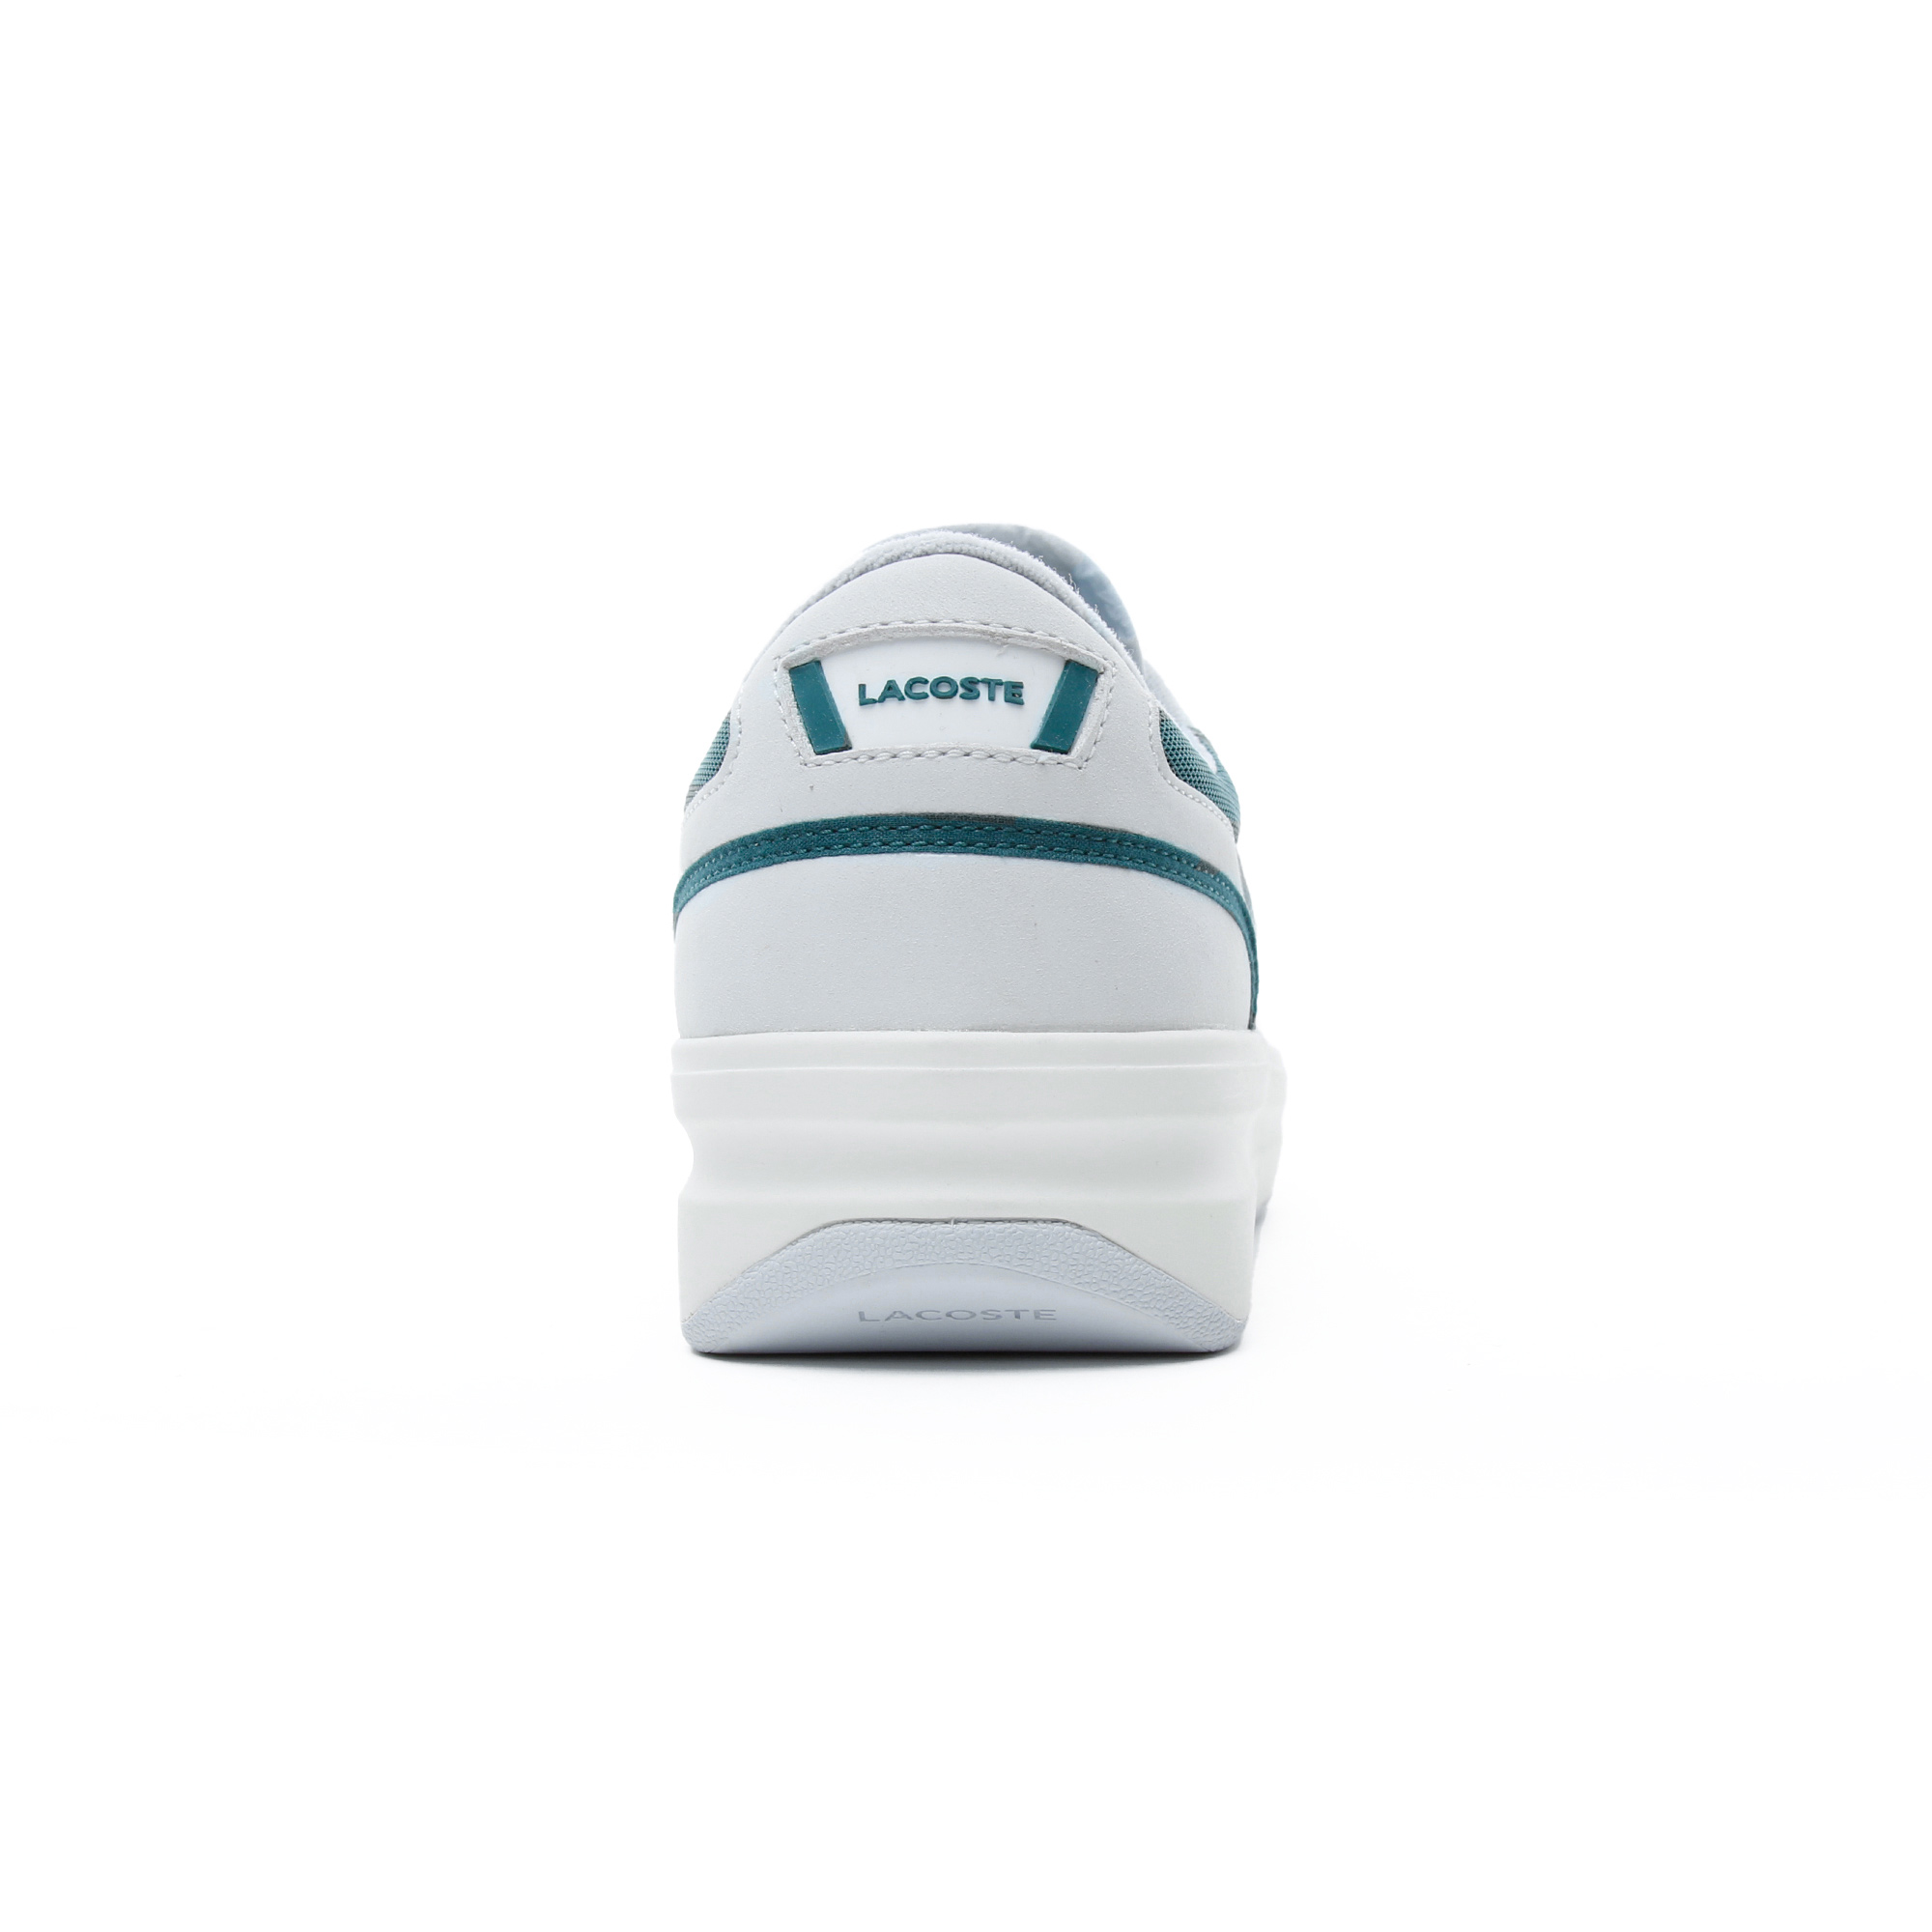 Lacoste G80 OG 120 1 SMA Erkek Beyaz - Koyu Yeşil Spor Ayakkabı